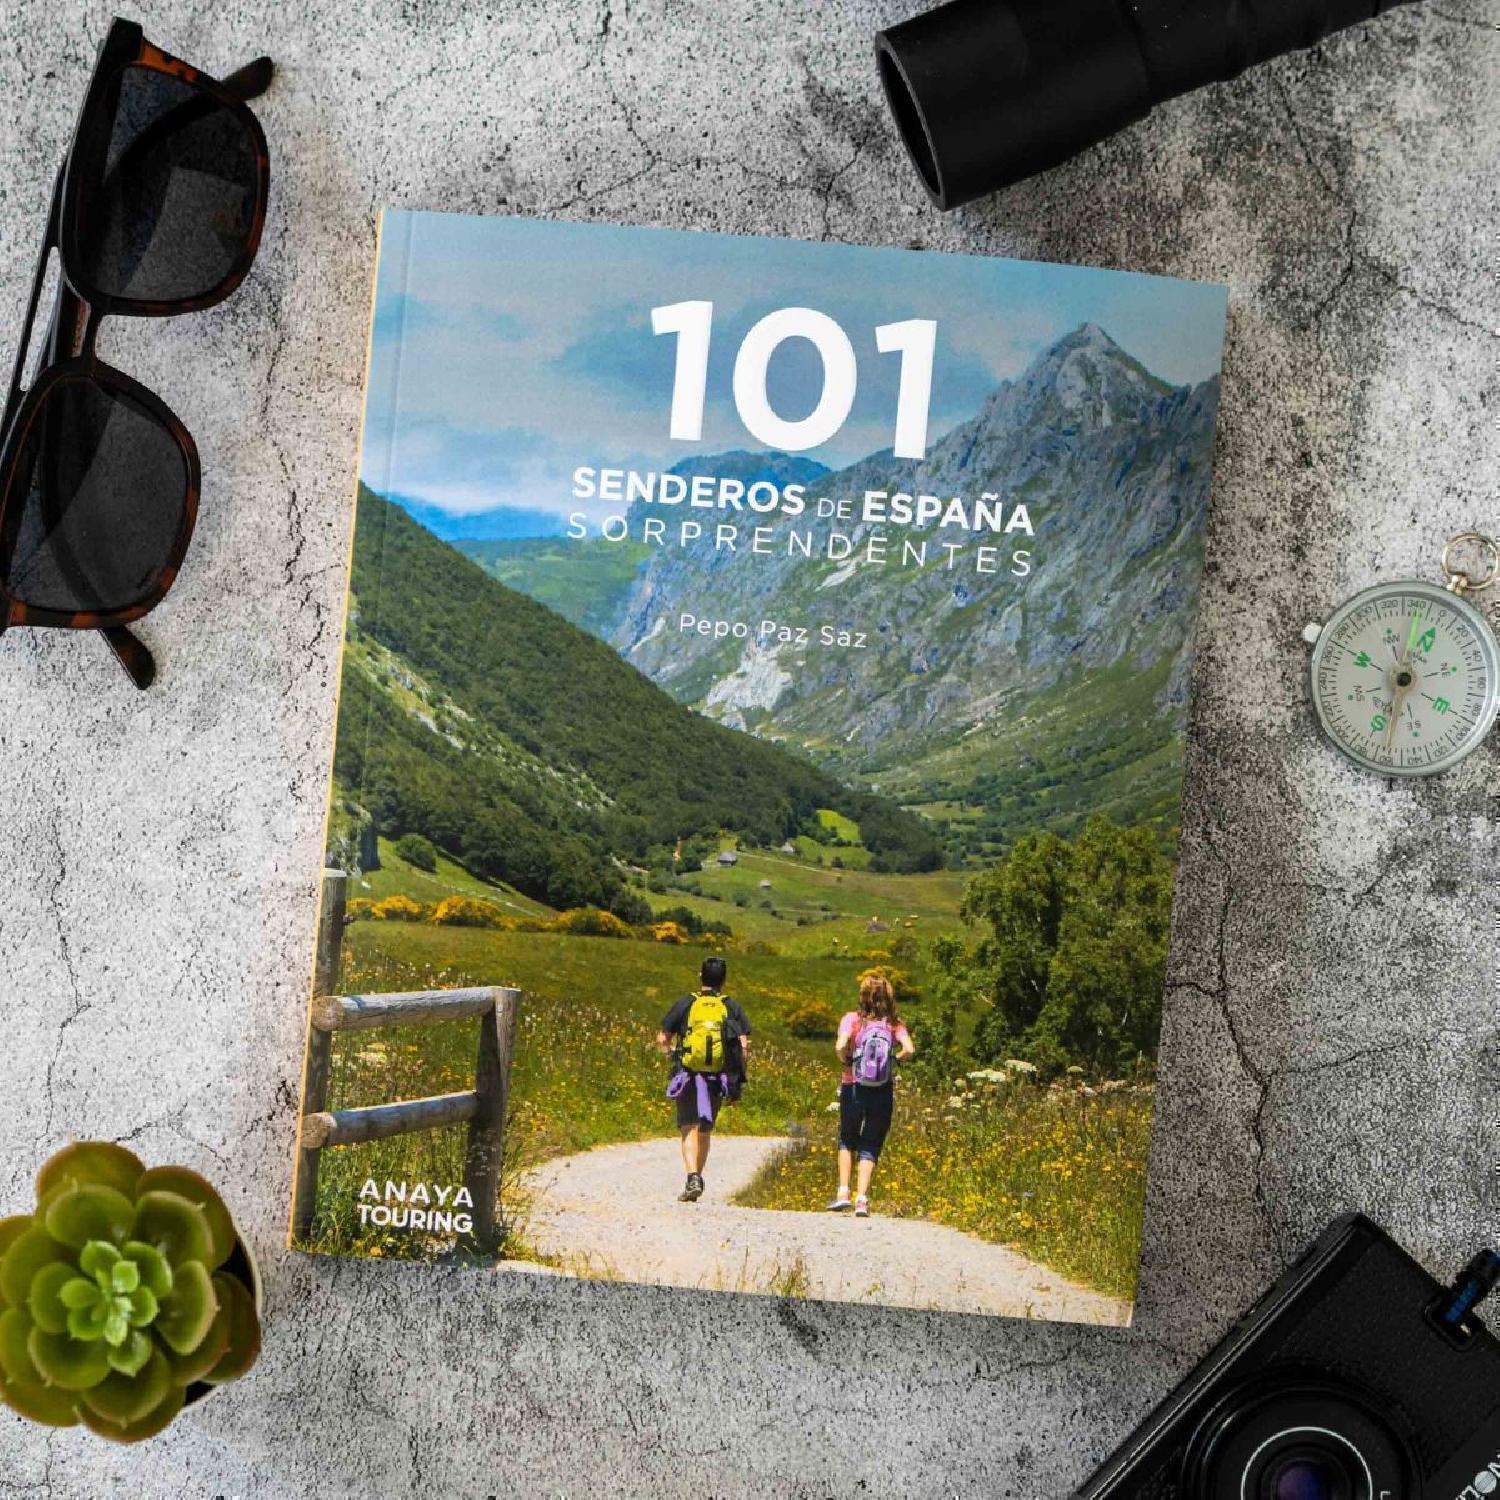 101 senderos de España sorprendentes de la editorial Anaya Touring